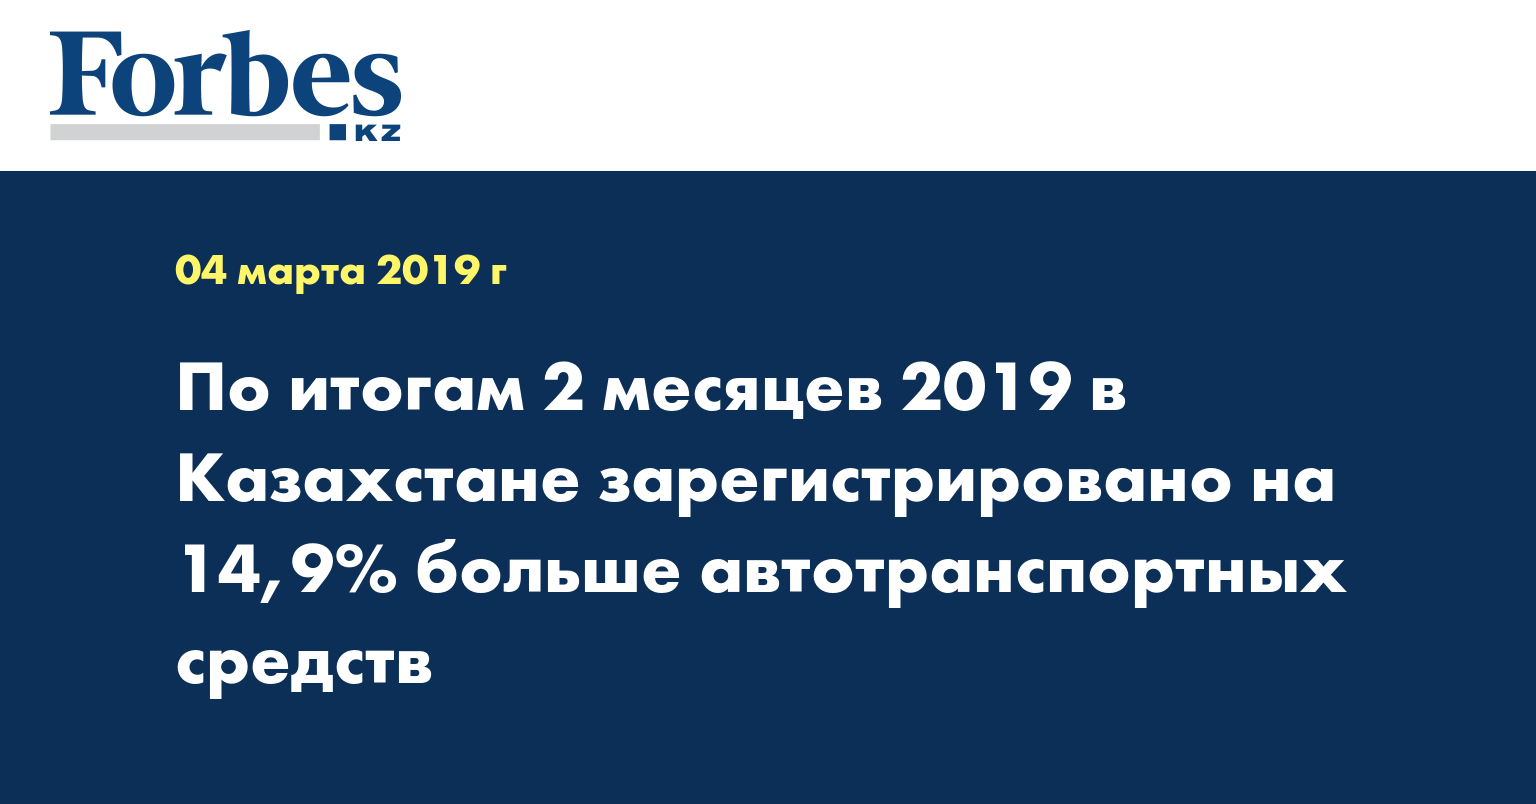 По итогам 2 месяцев 2019 в Казахстане зарегистрировано на 14,9% больше автотранспортных средств